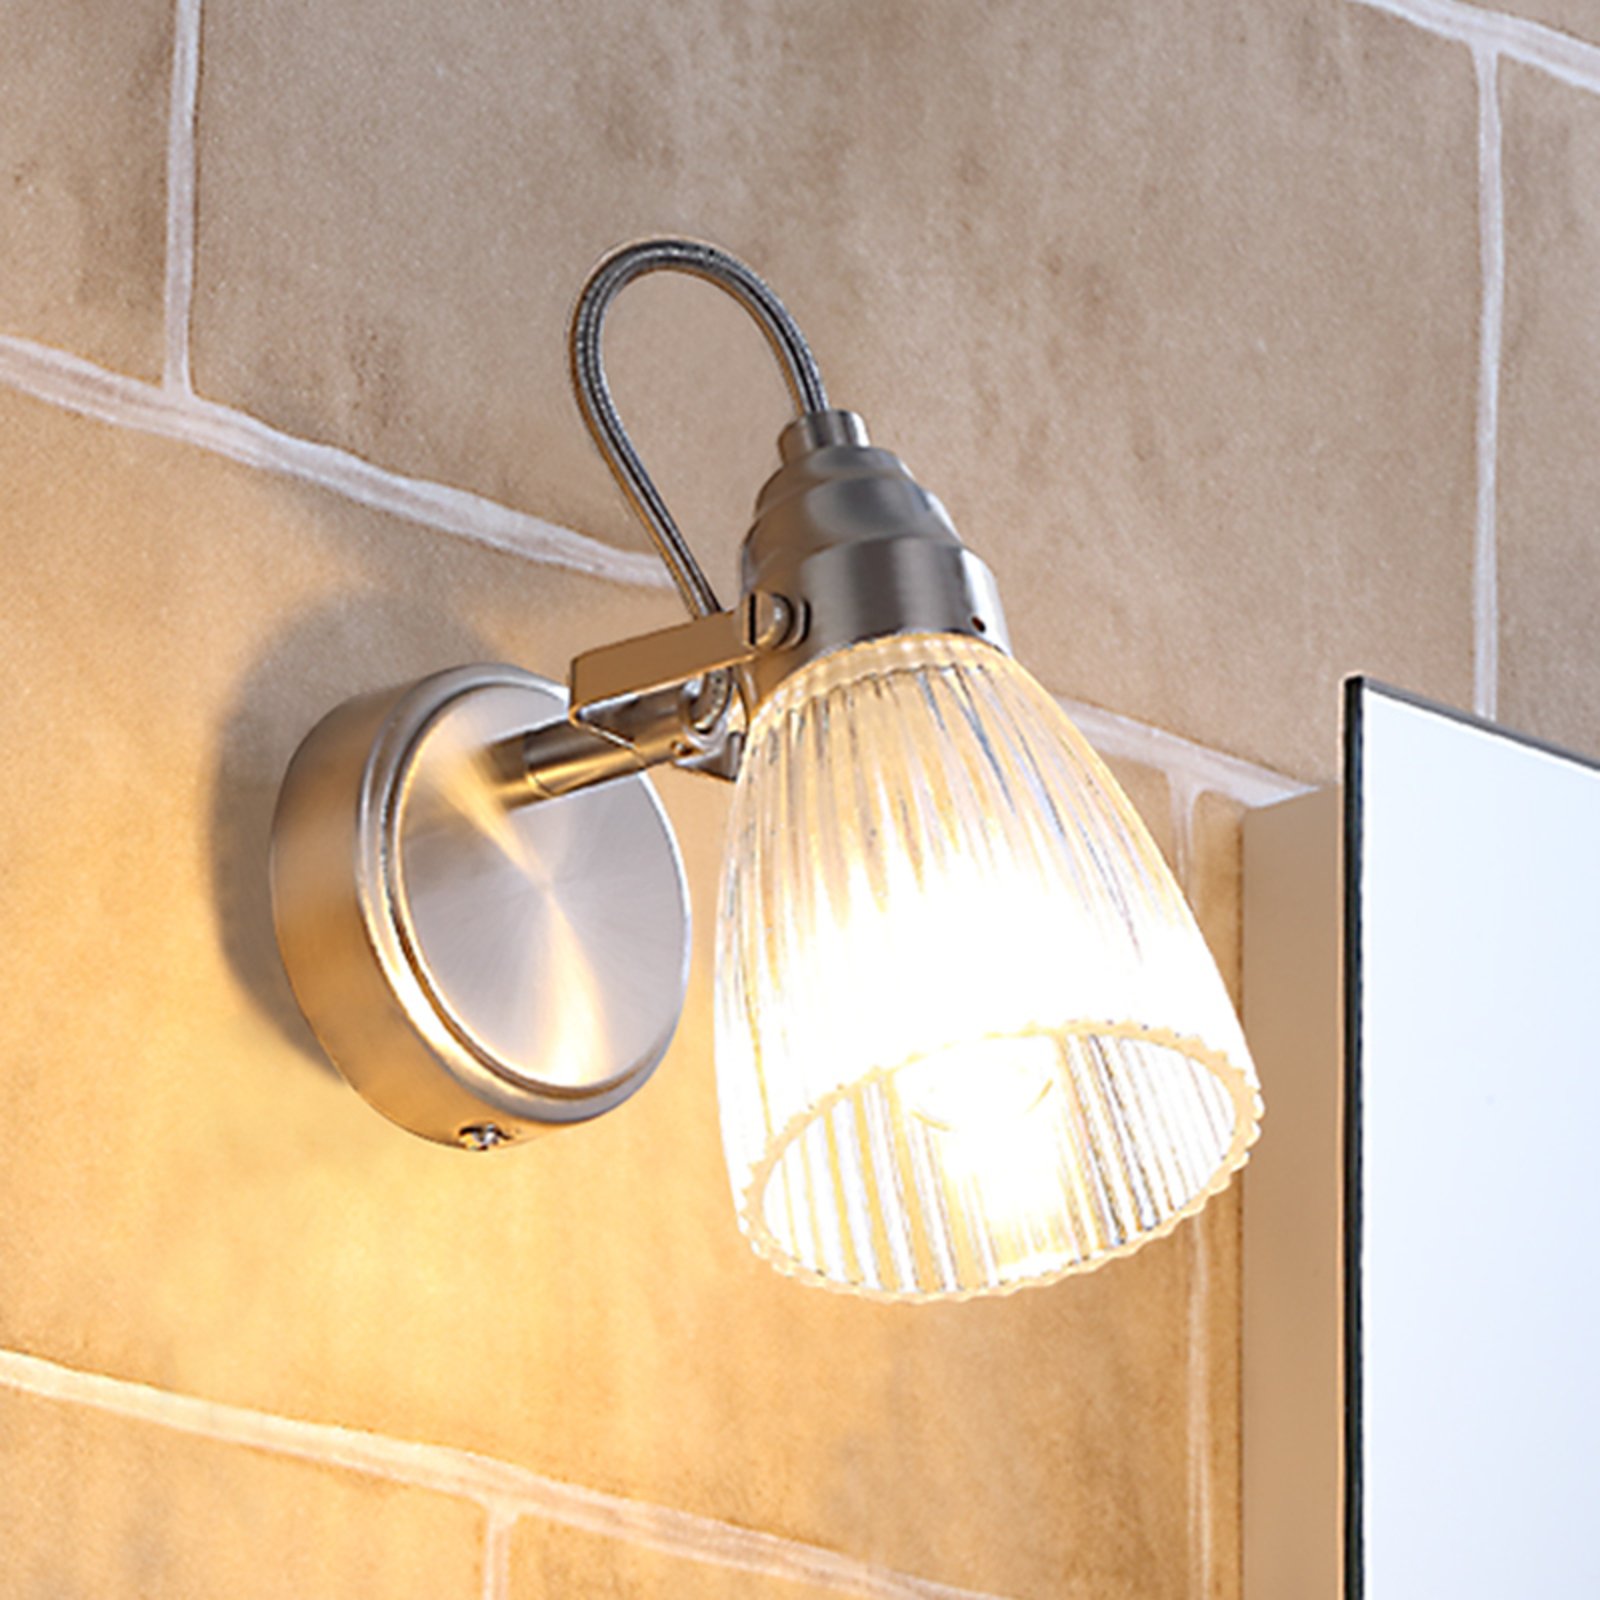 Kara bathroom wall light, 1-bulb, IP44